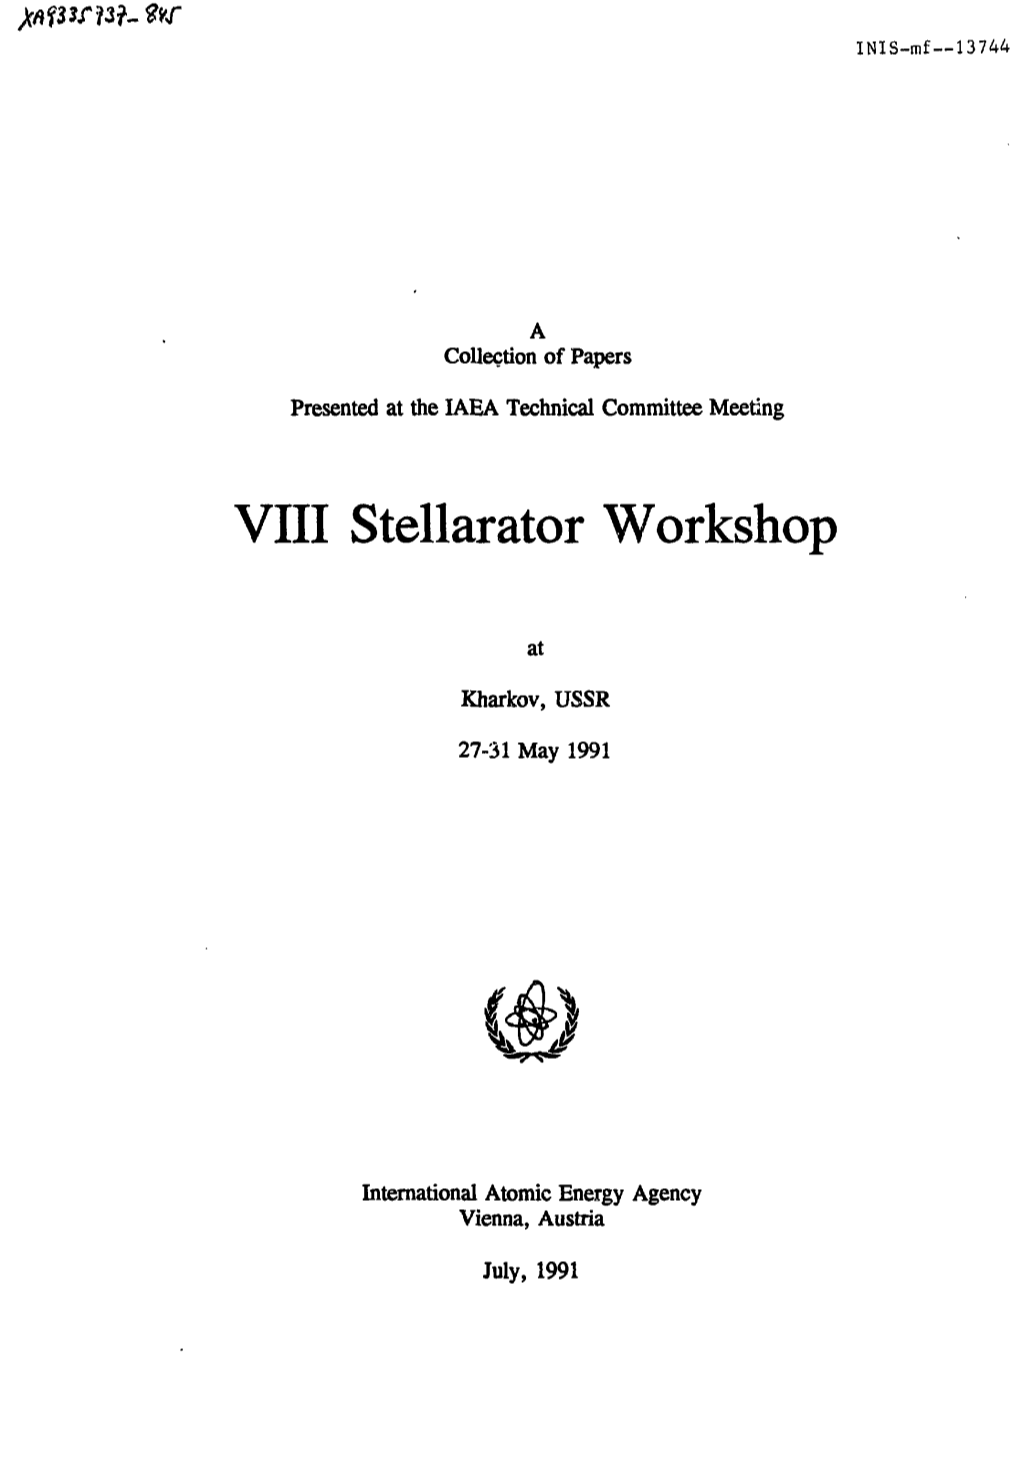 VIII Stellarator Workshop